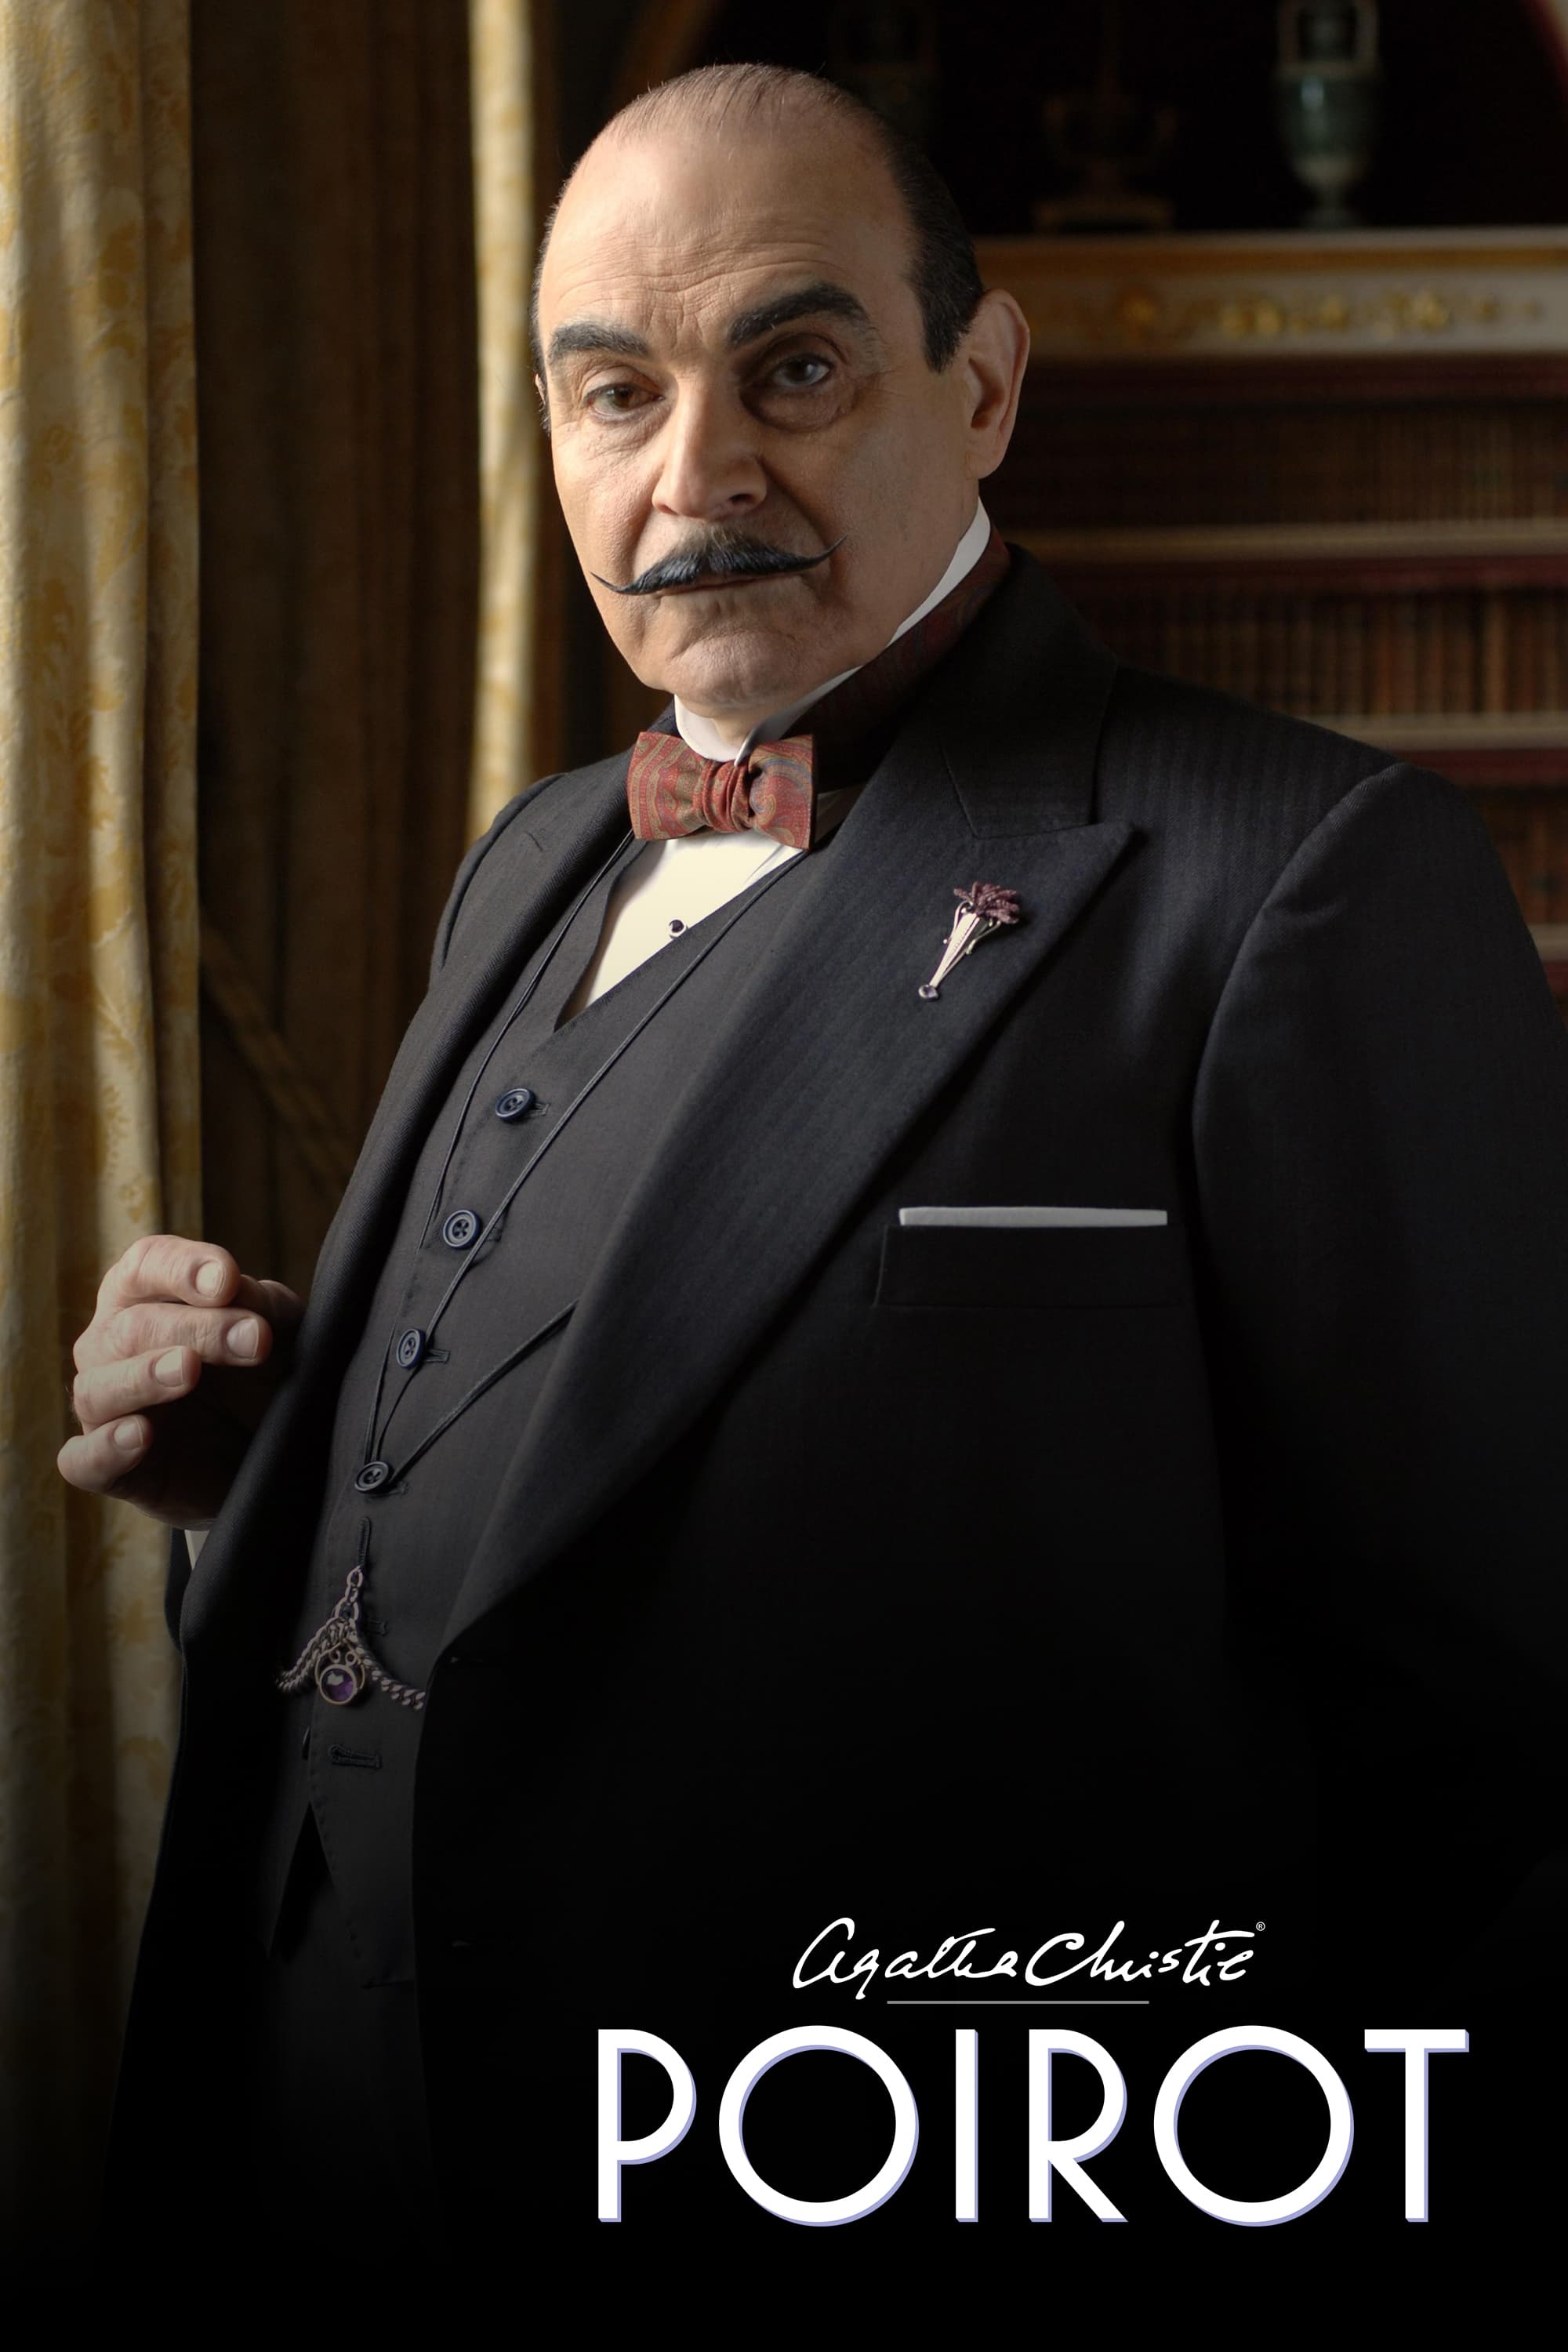 Hércules Poirot (1989)